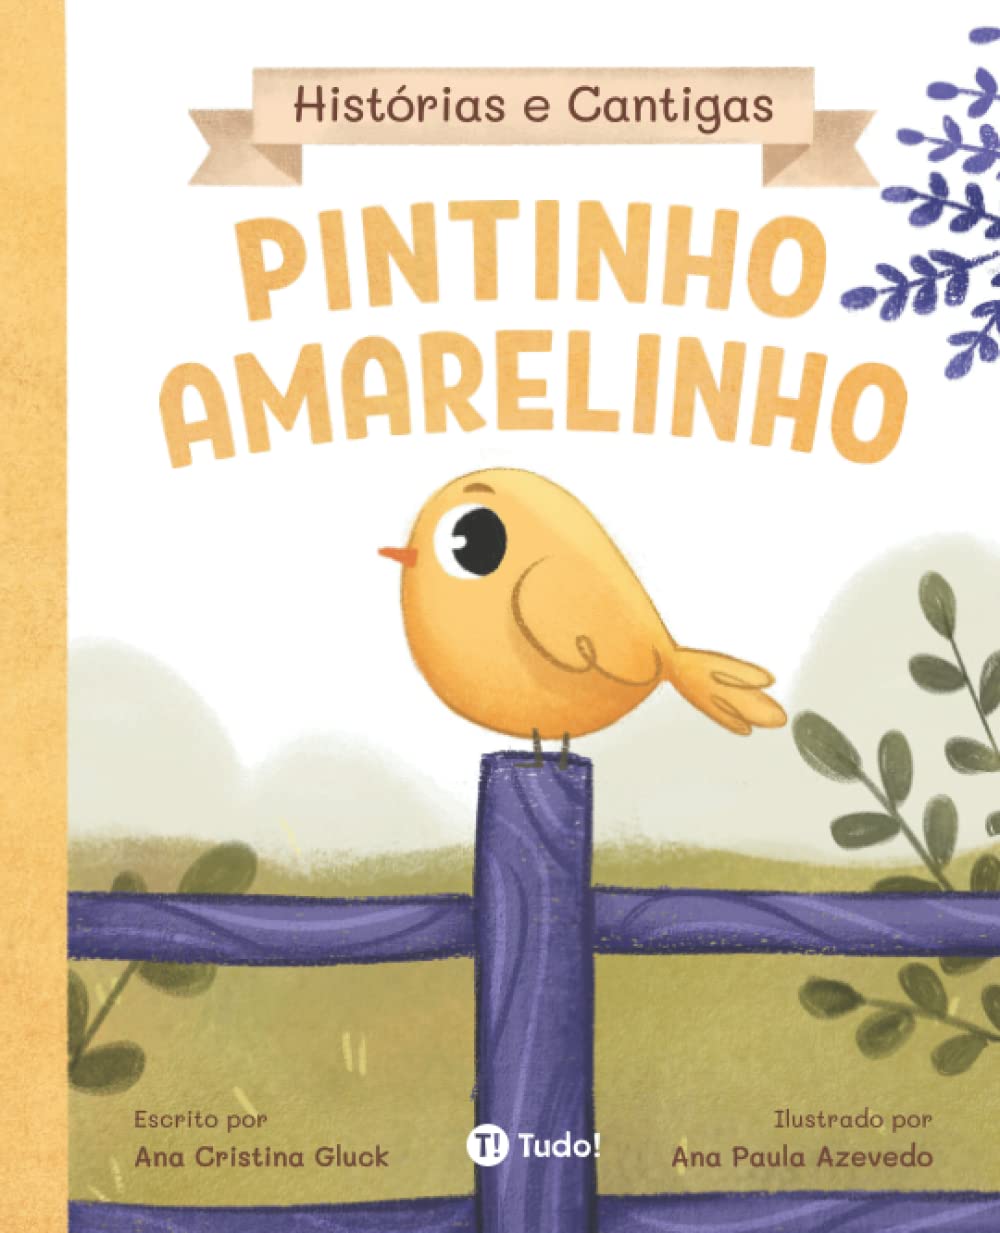 Pintinho Amarelinho (Histórias e Cantigas) (Portuguese Edition)